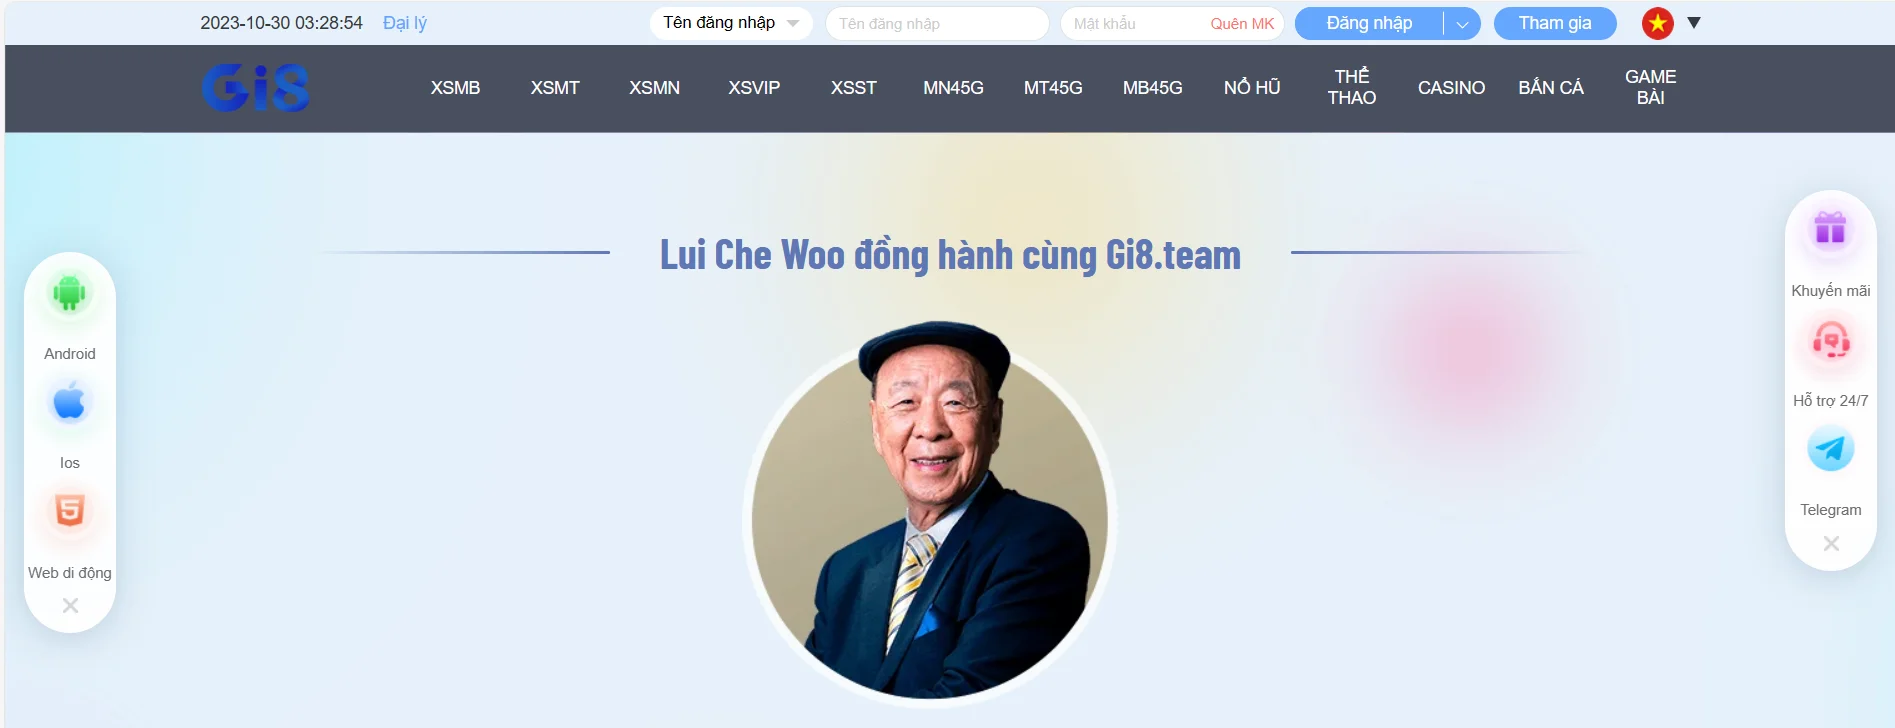 Lui Che Woo là tác giả, cũng như là CEO của Gi8.team